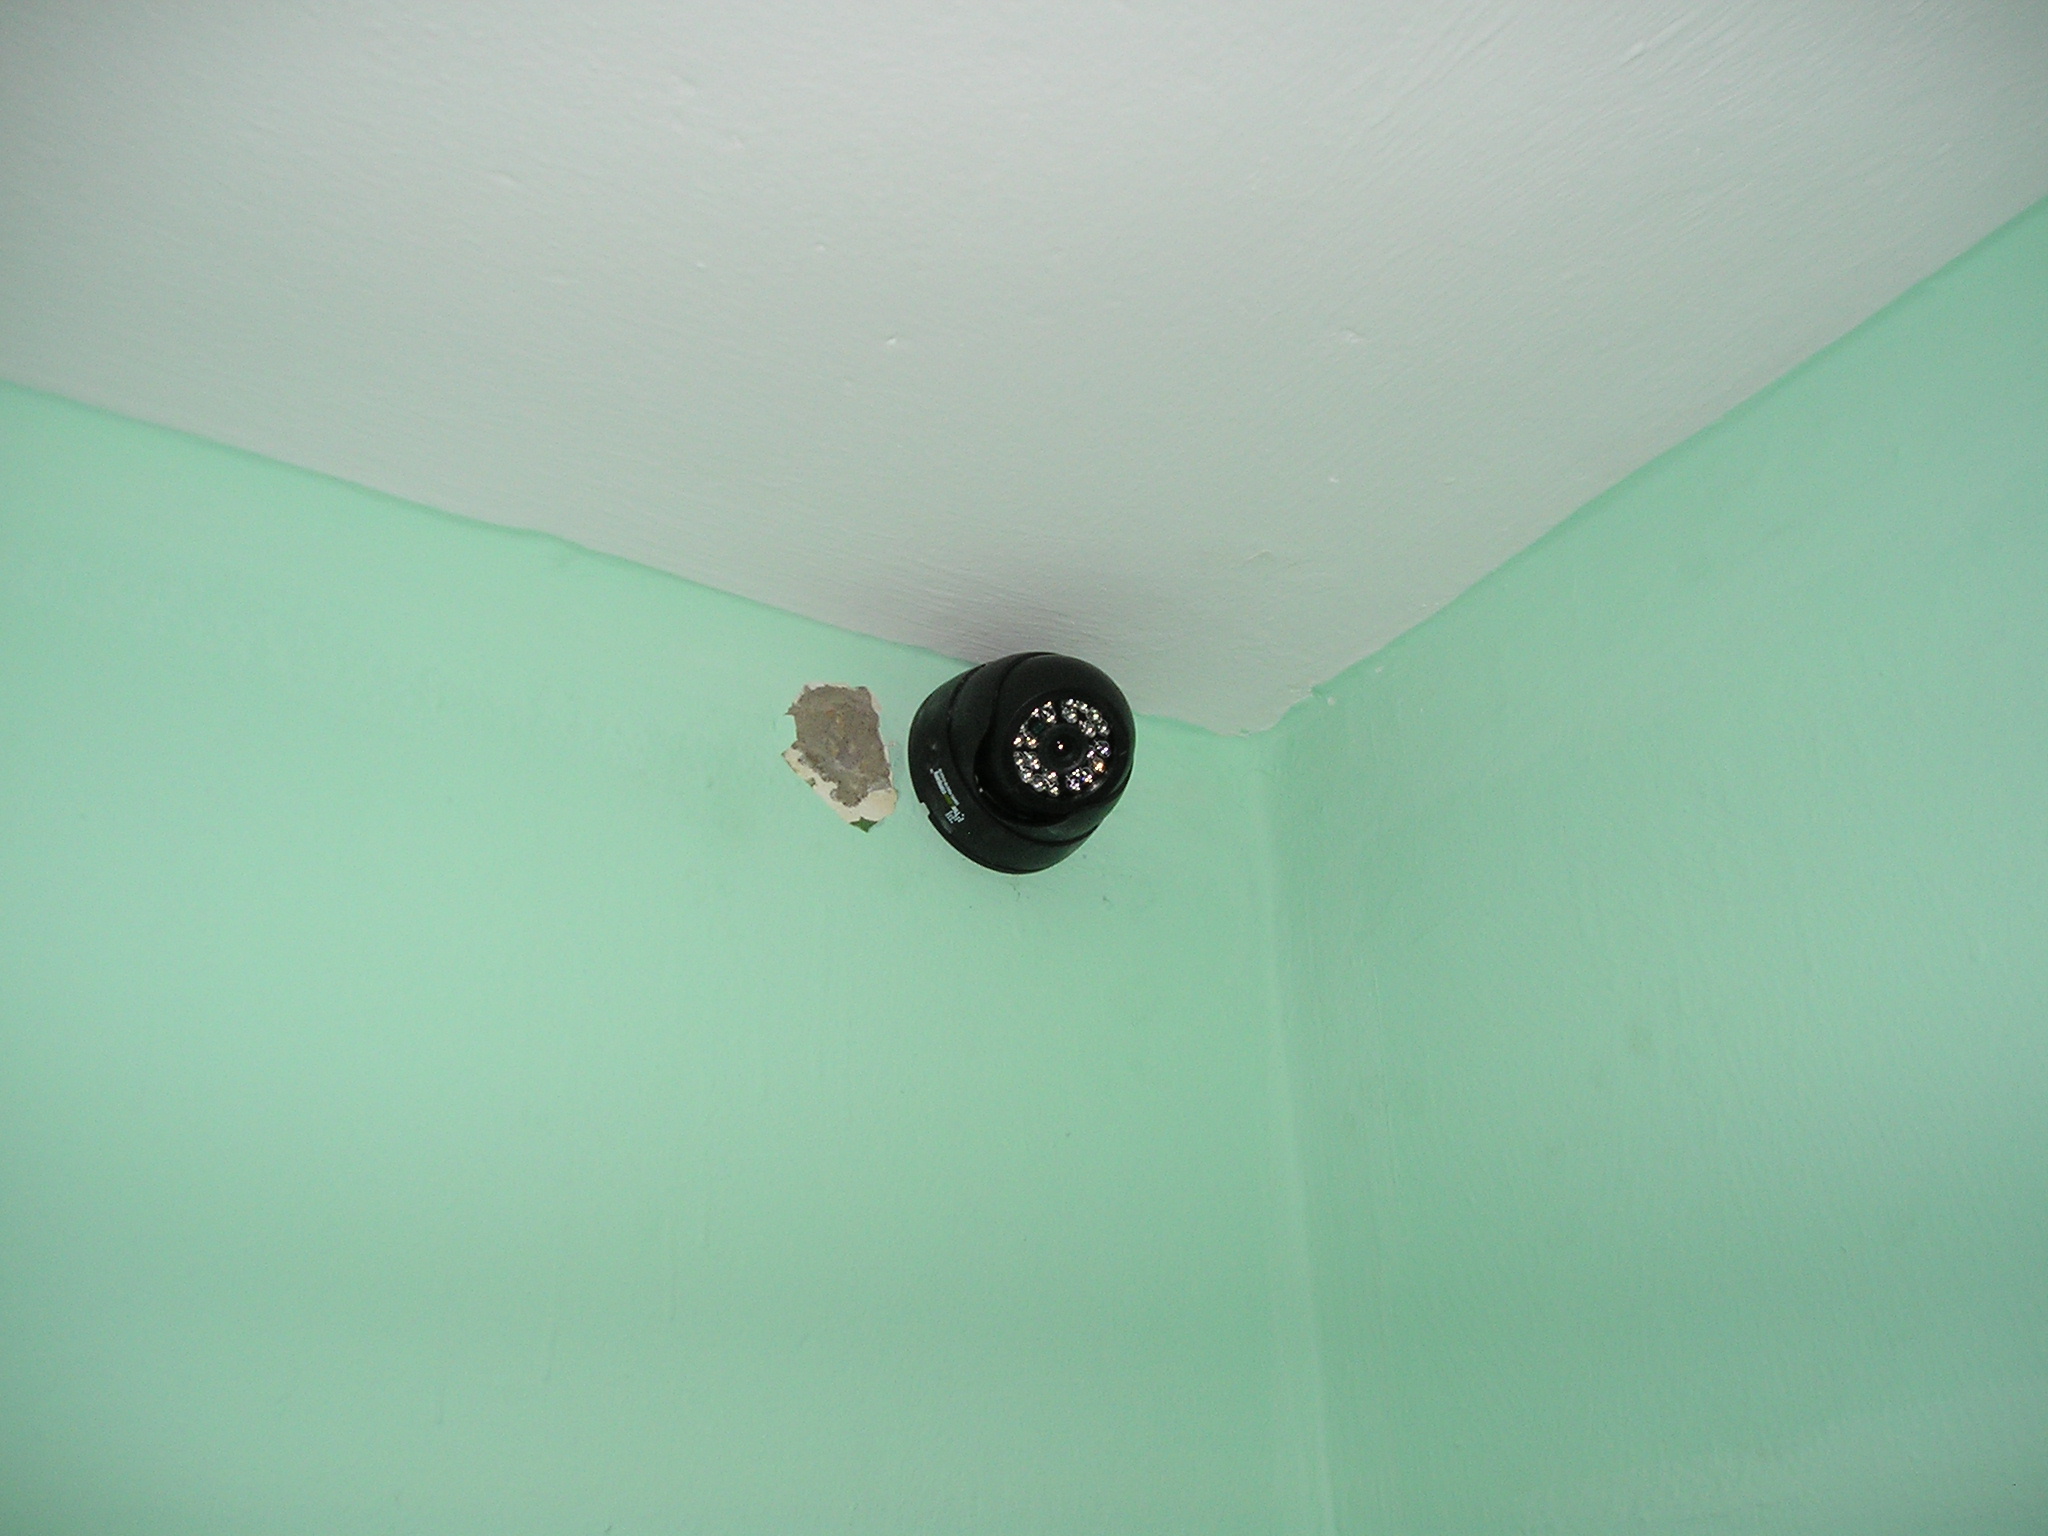 установка аналоговой камеры в коридоре на стене